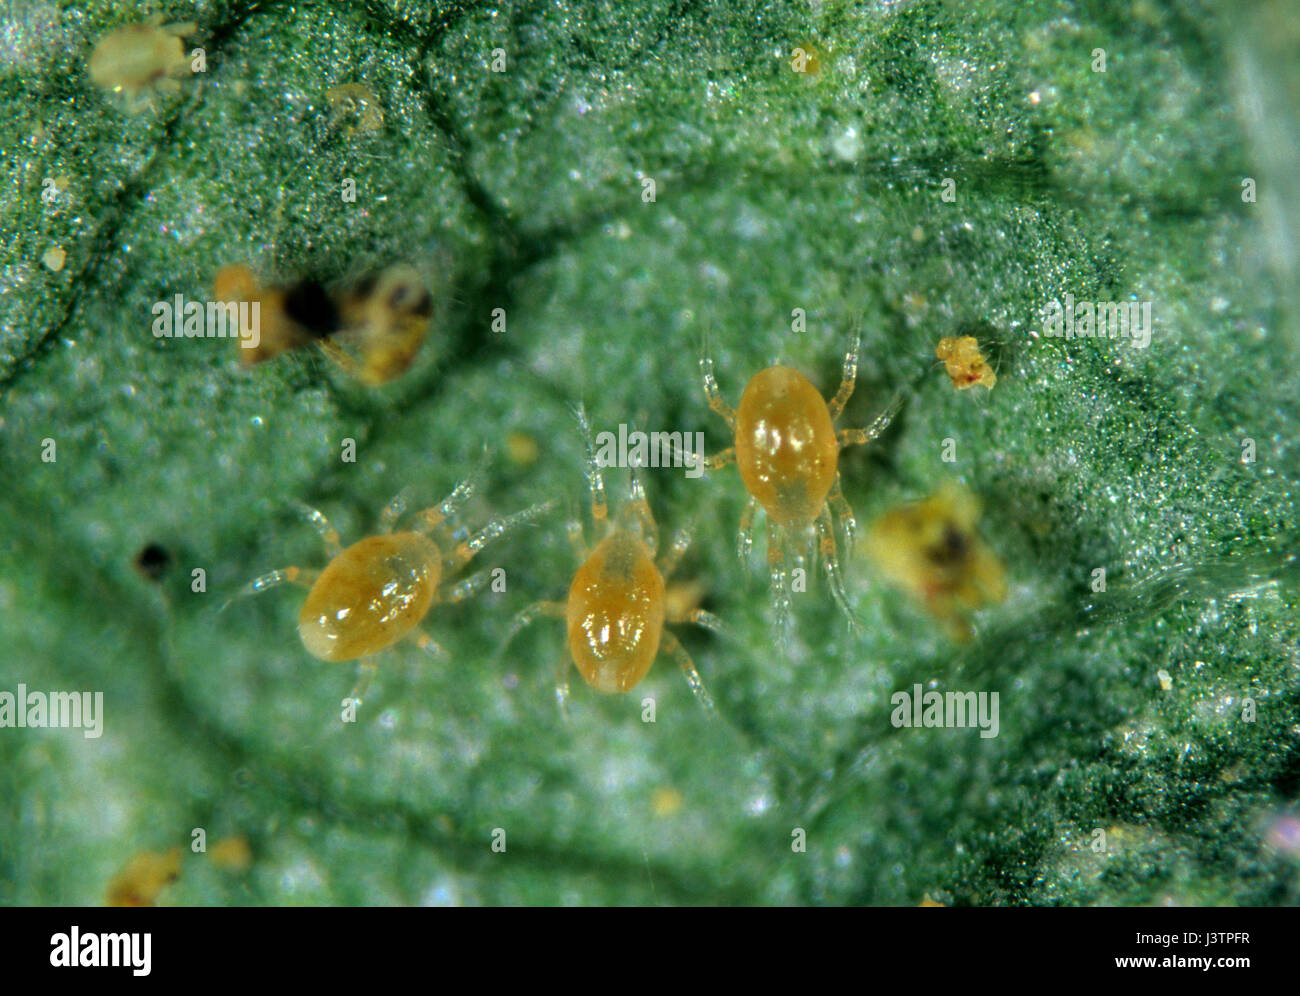 (Acariens prédateurs Phytoseiulus persimilis) sur une feuille avec les acariens proies Banque D'Images